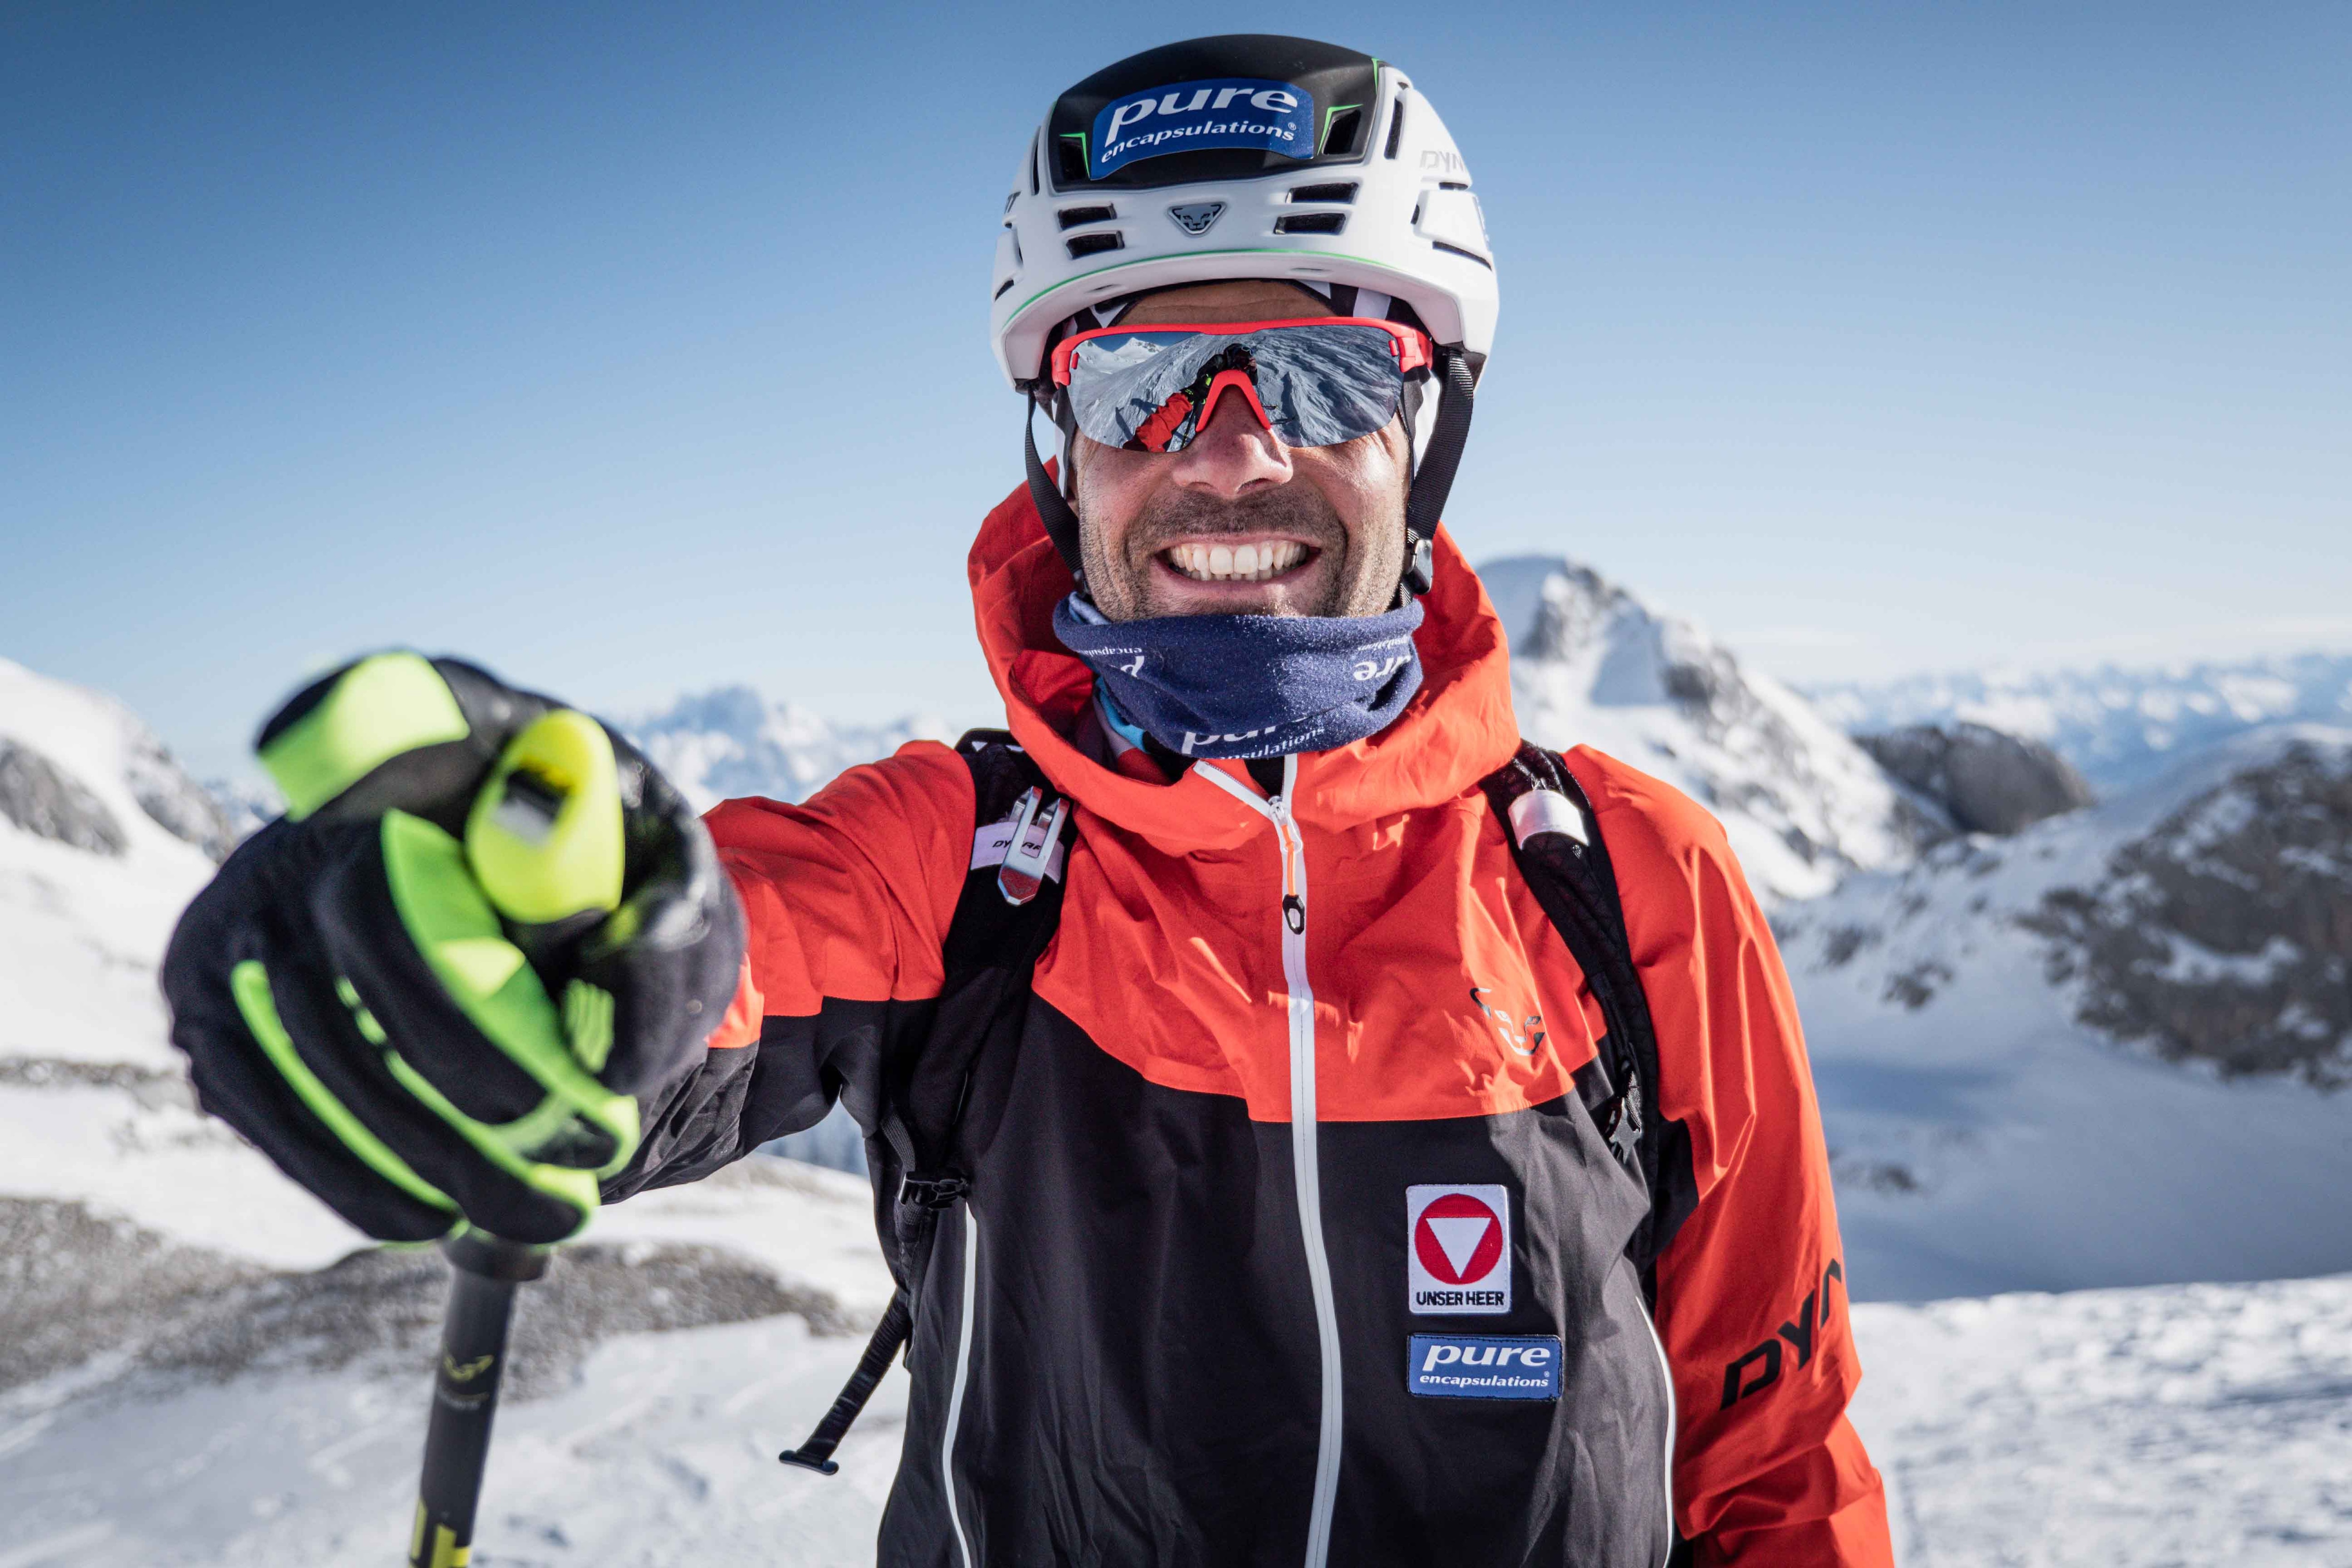 Egal wie viele Höhenmeter Anstieg noch vor ihm liegen, Jakob Herrmann hat stets einen Grinser im Gesicht. Hier auf Skitour im Tennengebirge